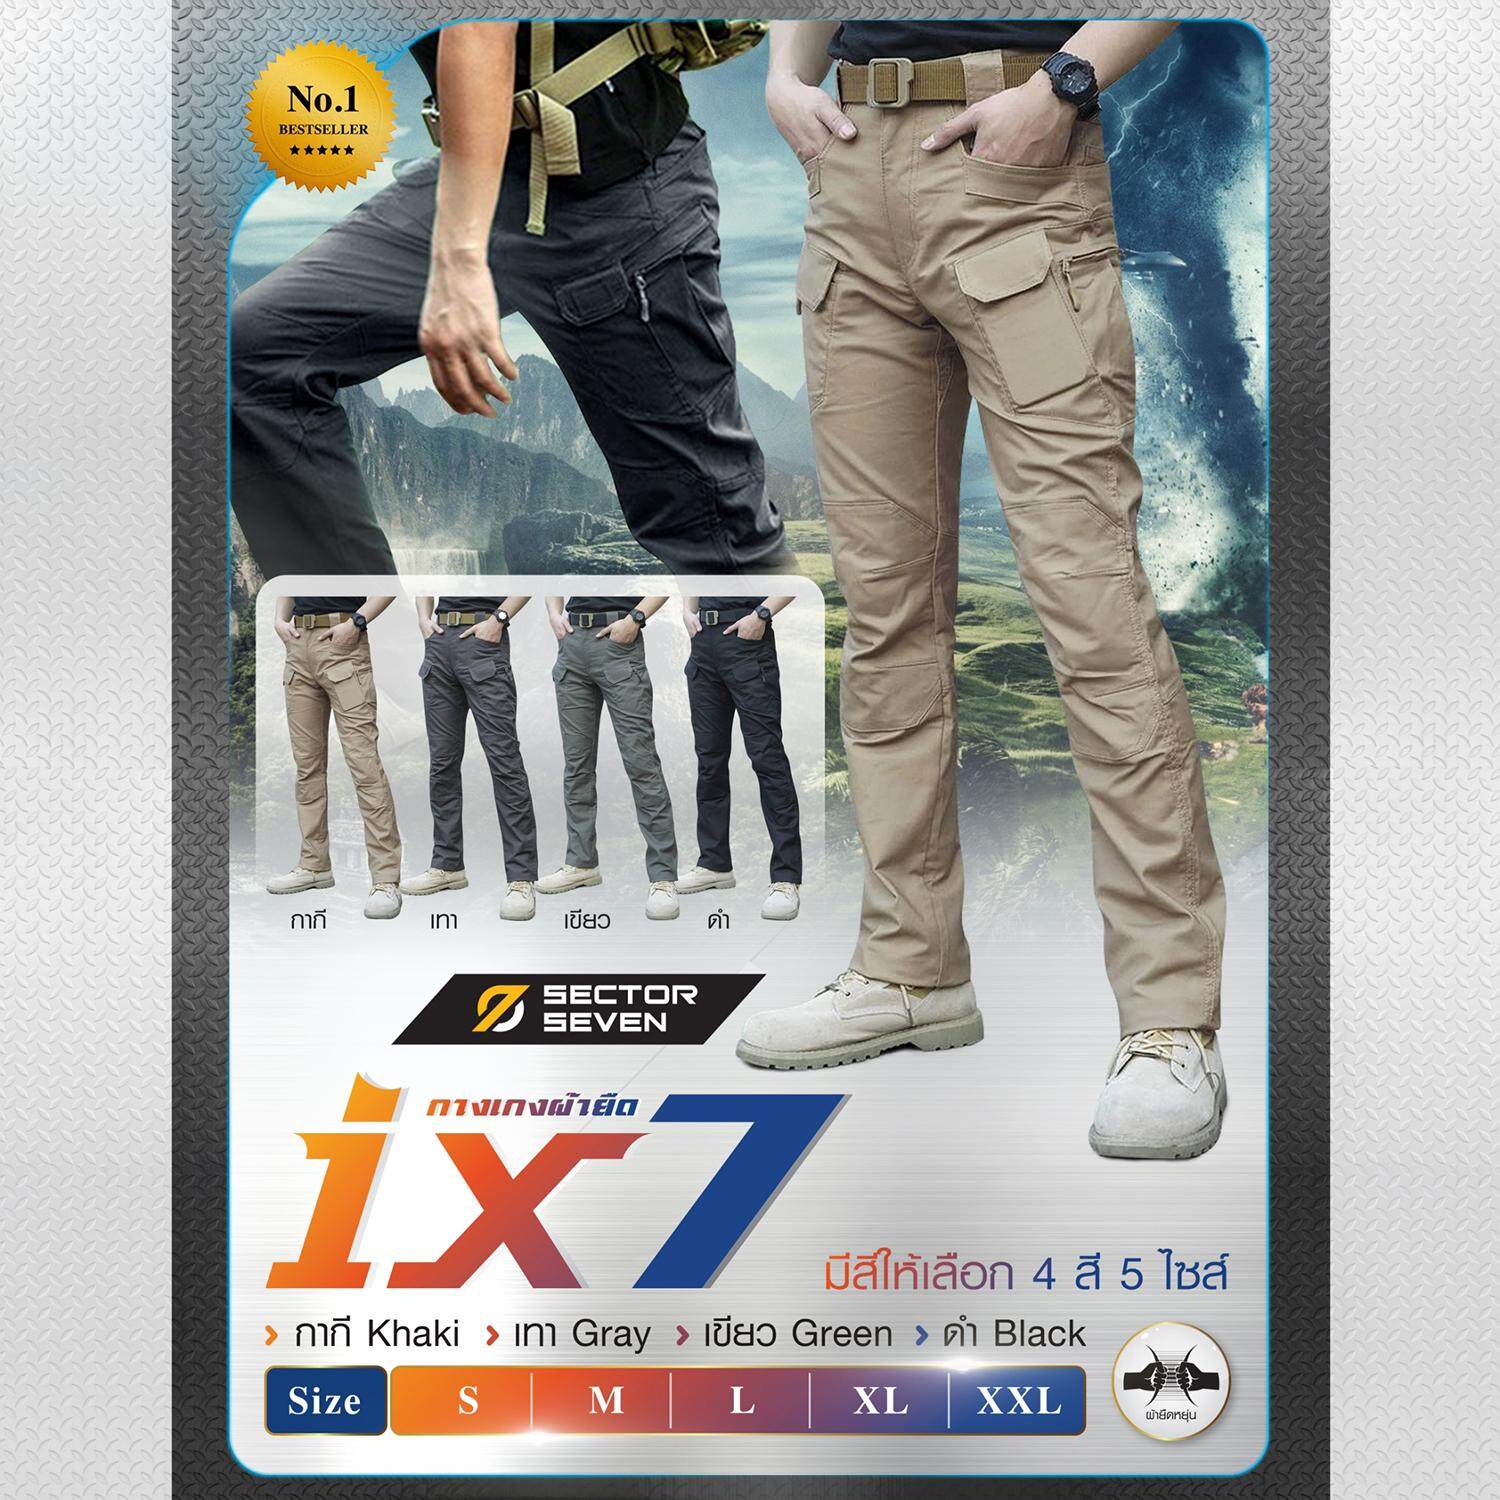 กางเกง Sector Seven IX7 ของแท้ ผ้ายืด กางเกงเดินป่า กางเกงทหาร กางเกงยุทธวิธี